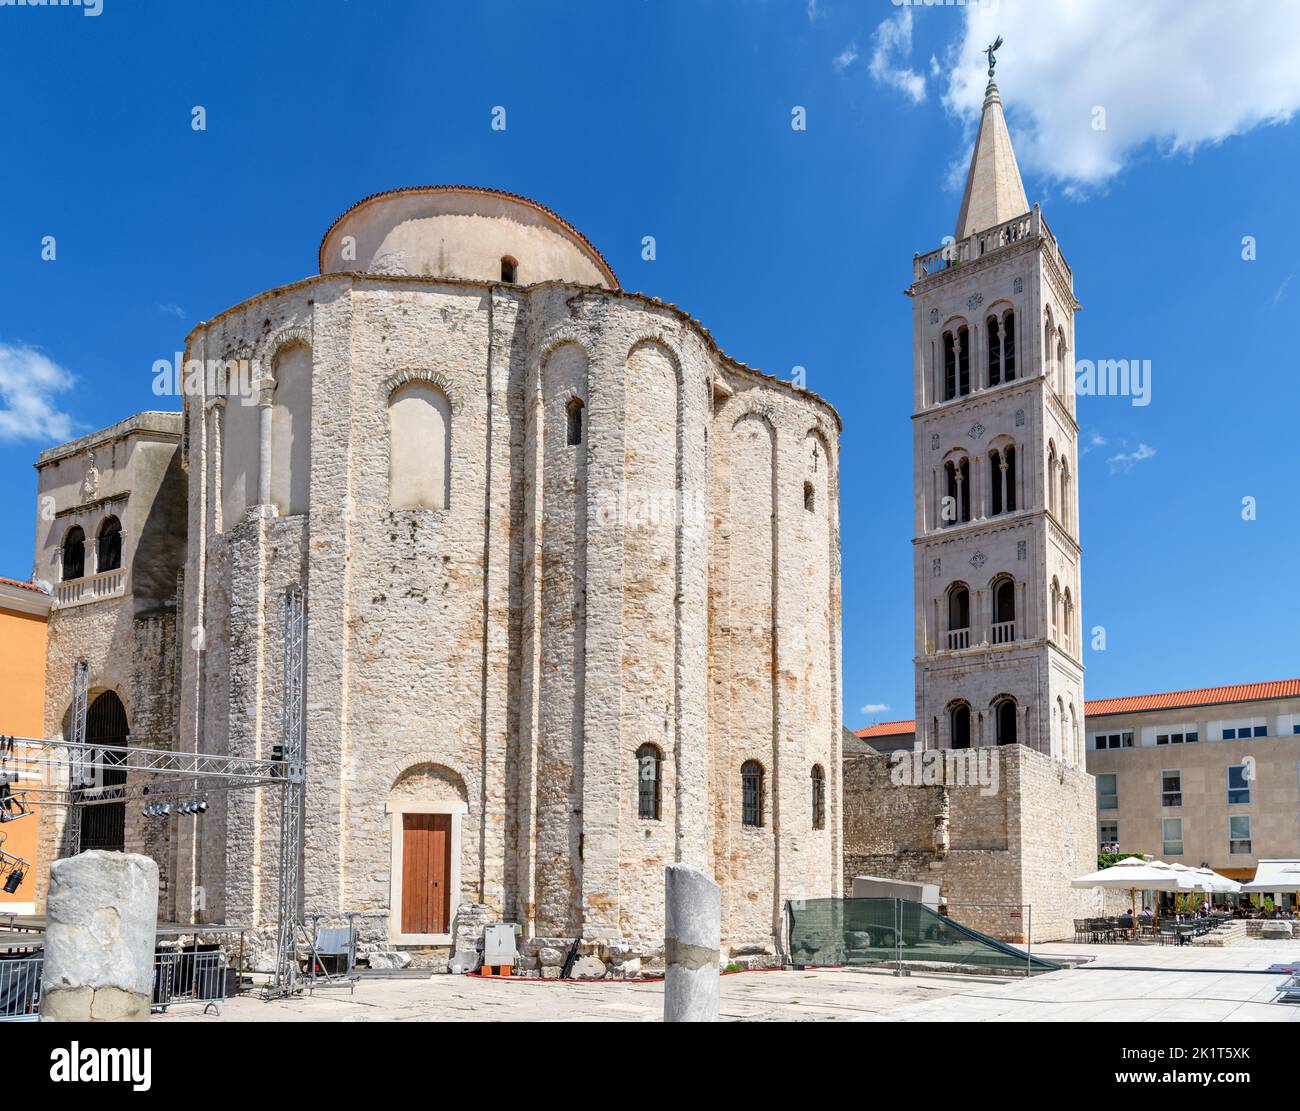 Le clocher de la cathédrale St Anastasia et l'église St Donatus dans le centre historique de Zadar, Croatie Banque D'Images